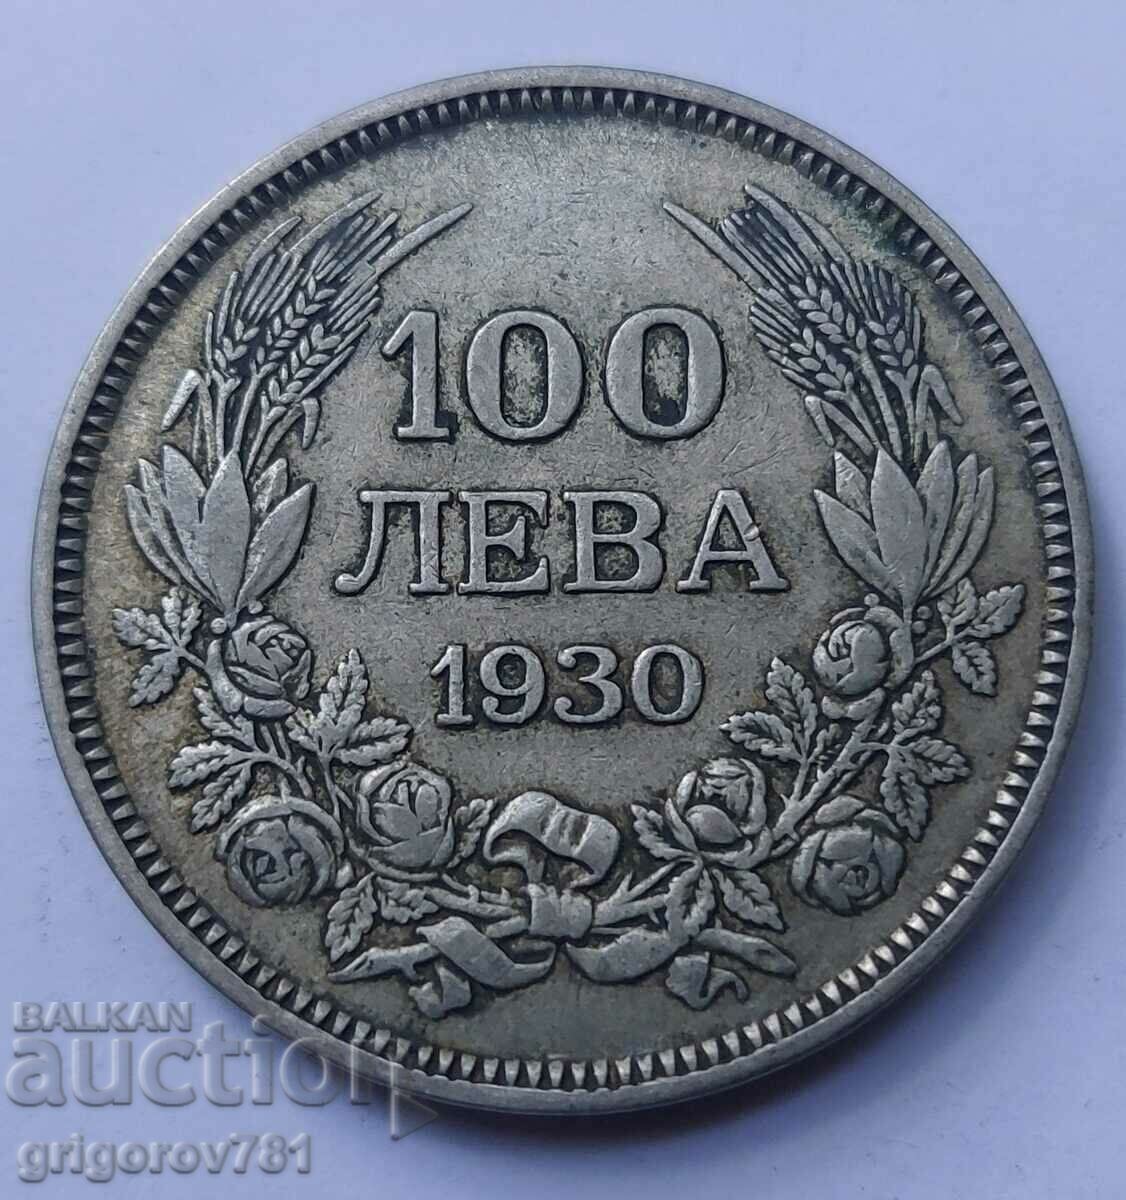 100 leva silver Bulgaria 1930 - silver coin #32